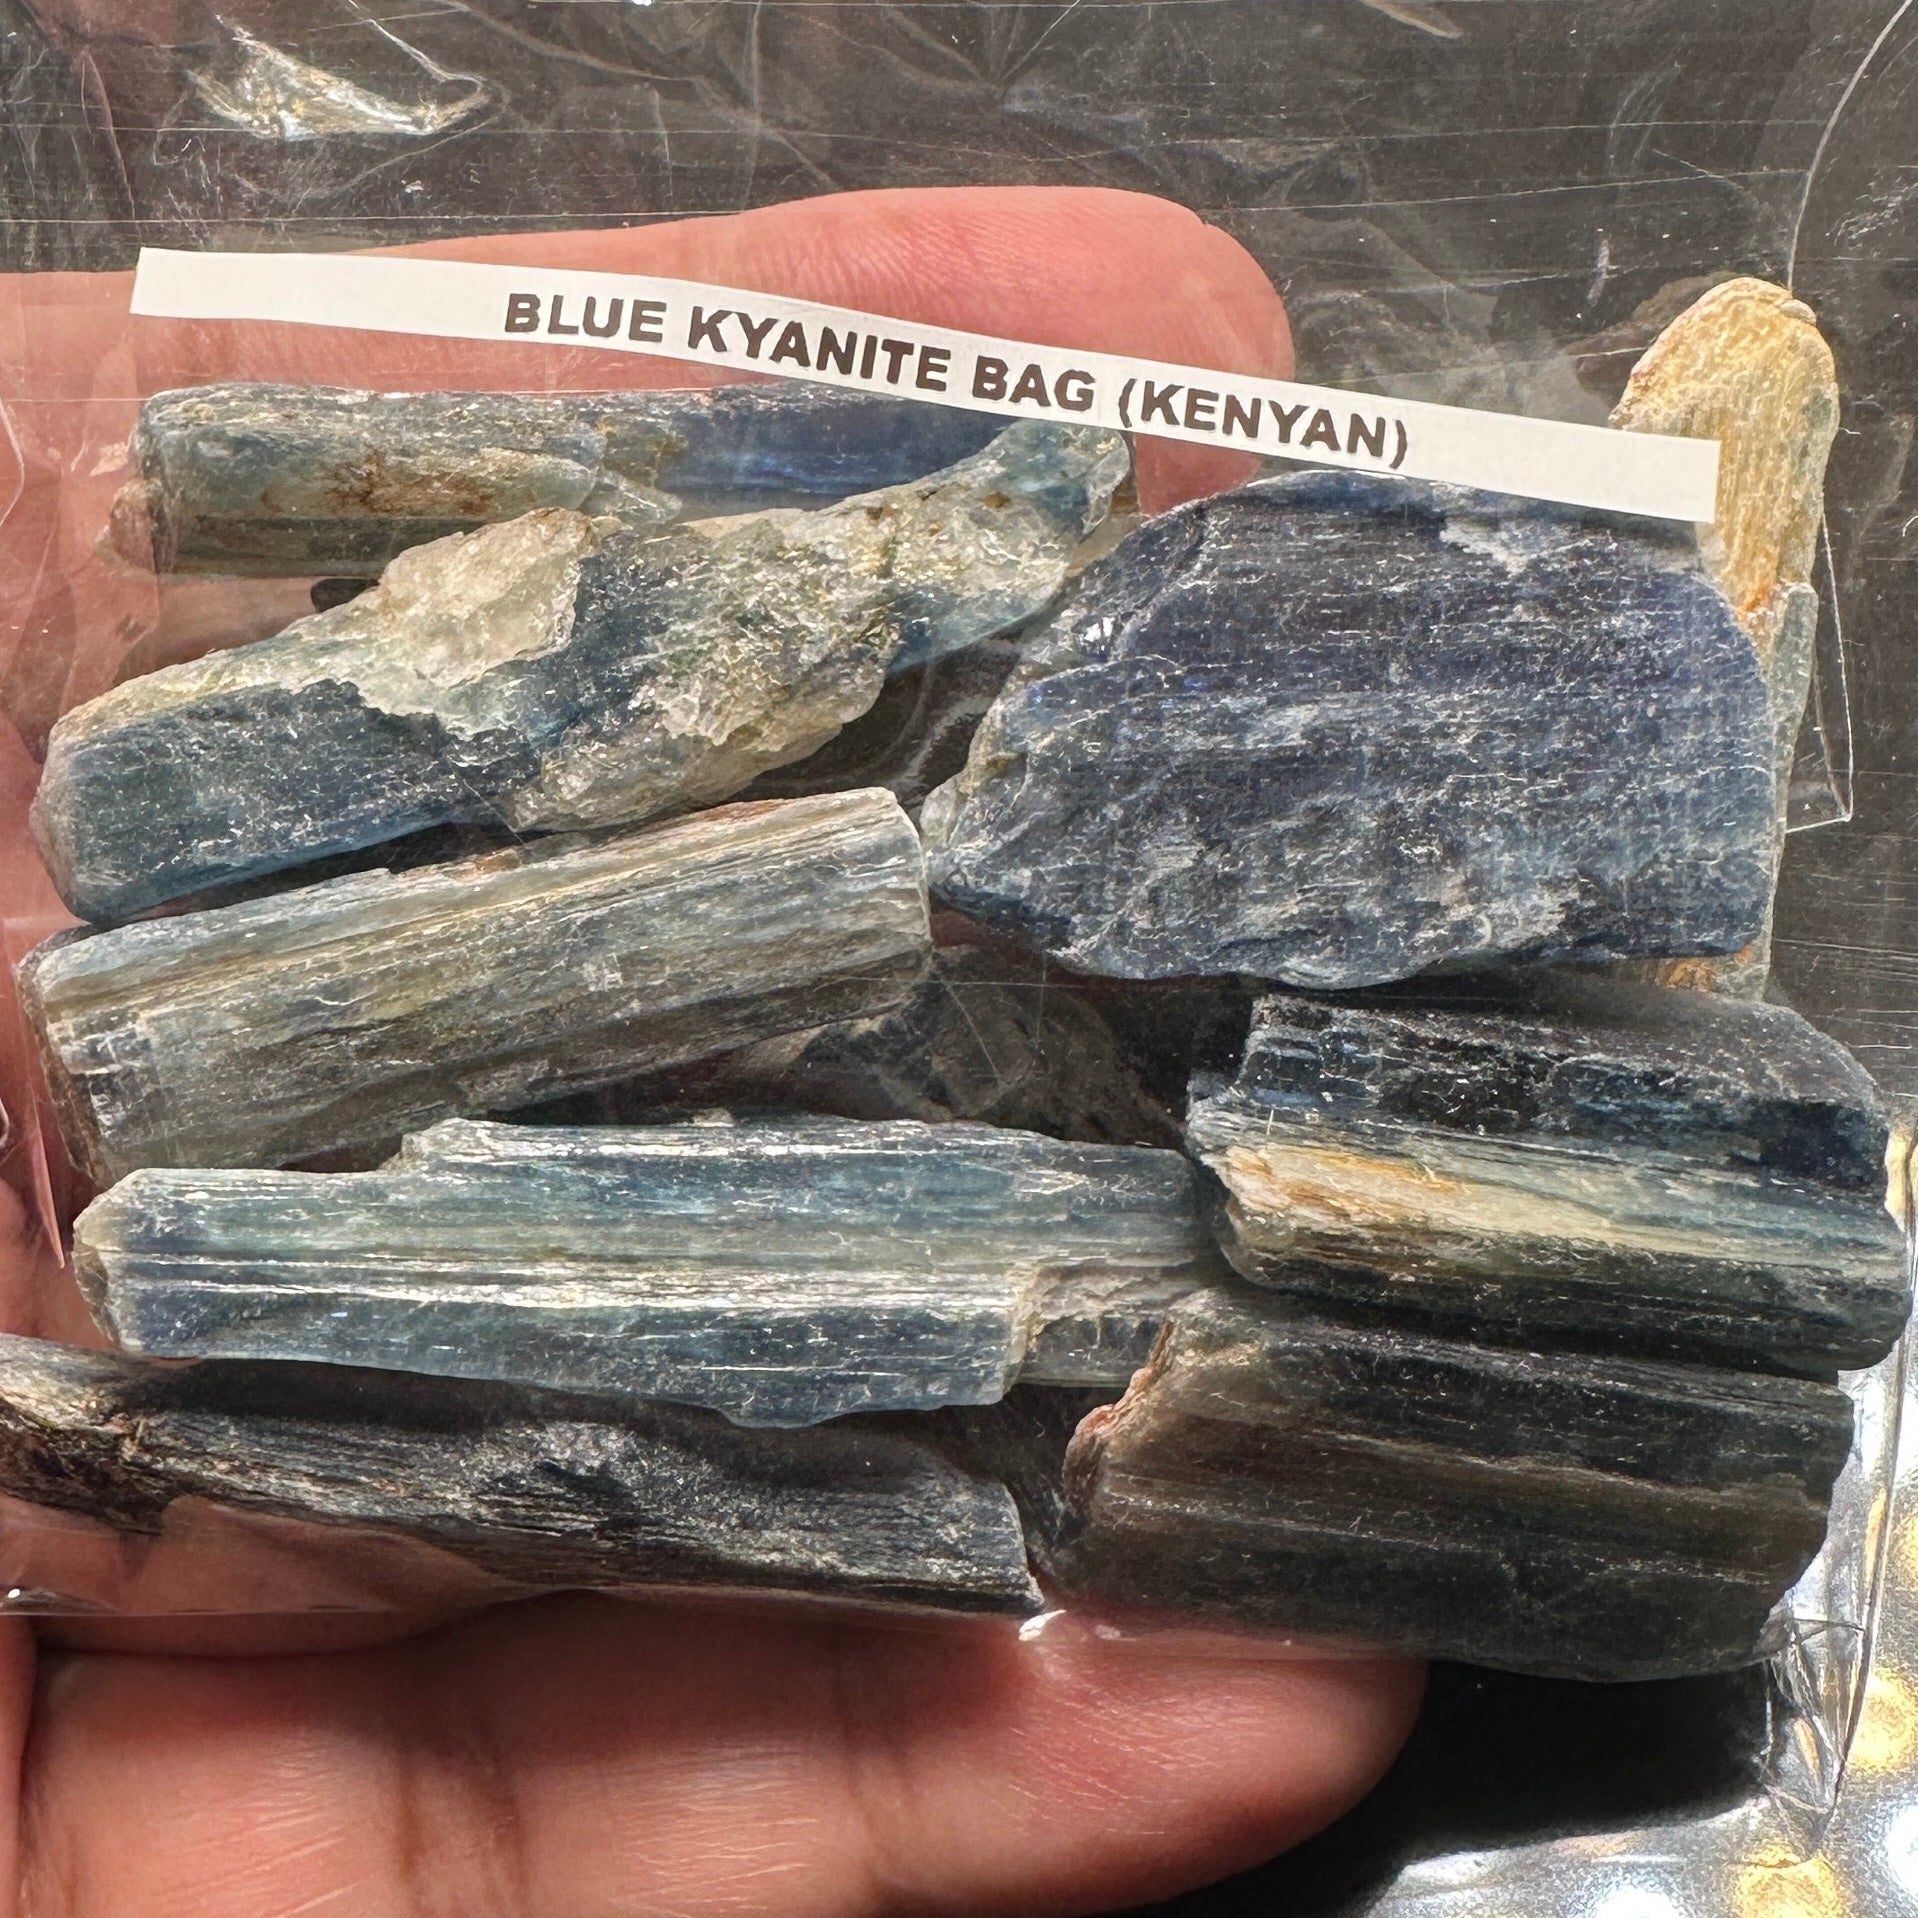 Blue Kyanite Large Bag, Kenyan